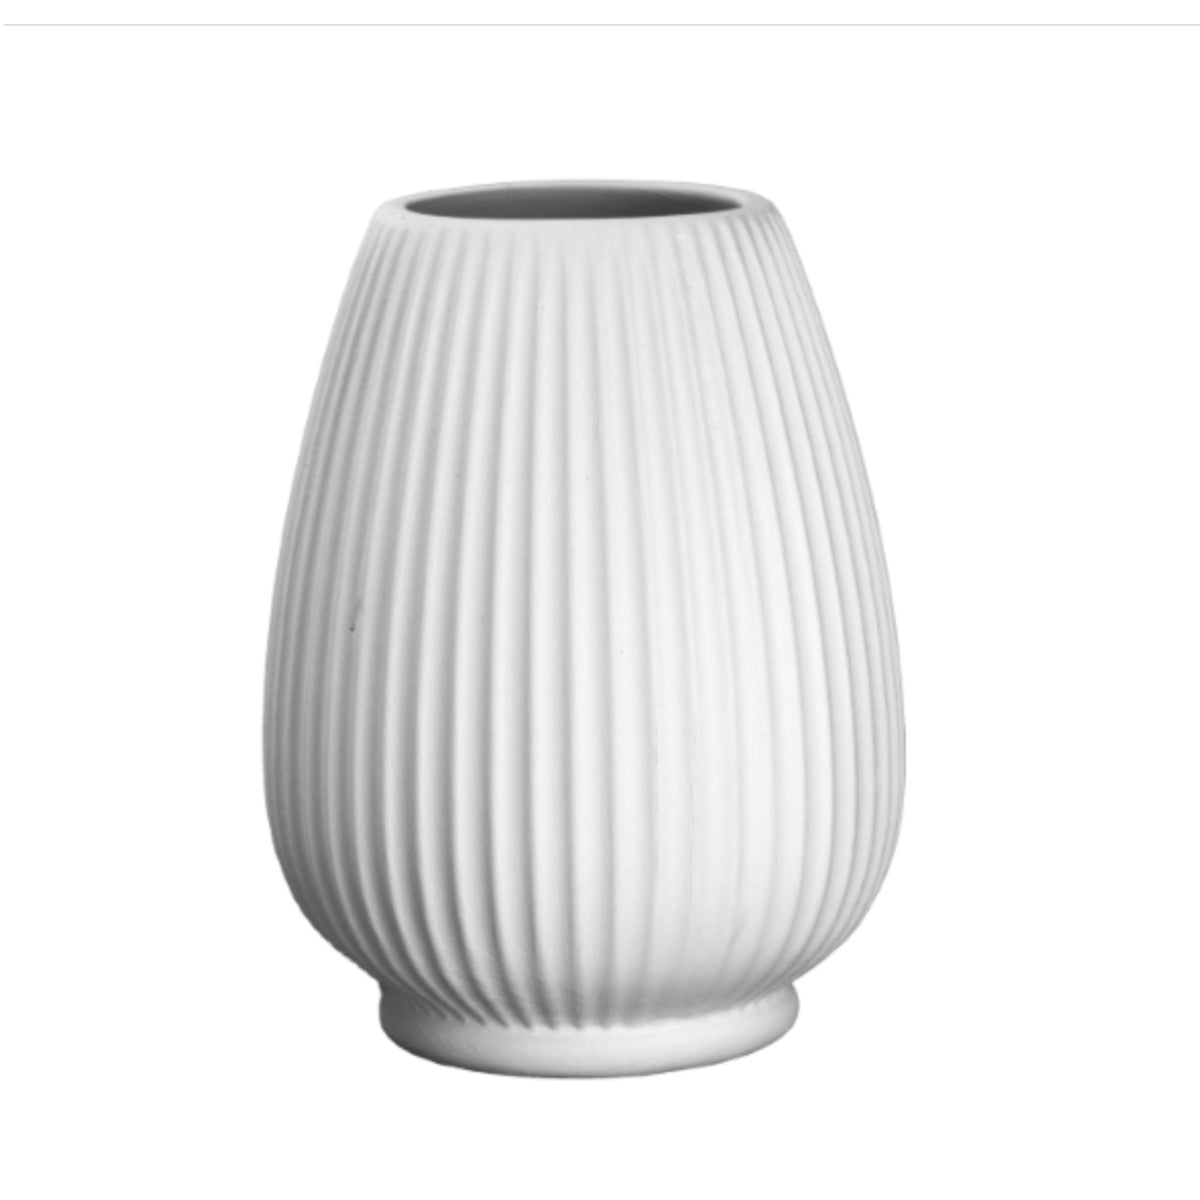 Kegelförmige Vase mit geriffelter Oberfläche, Rohkeramik